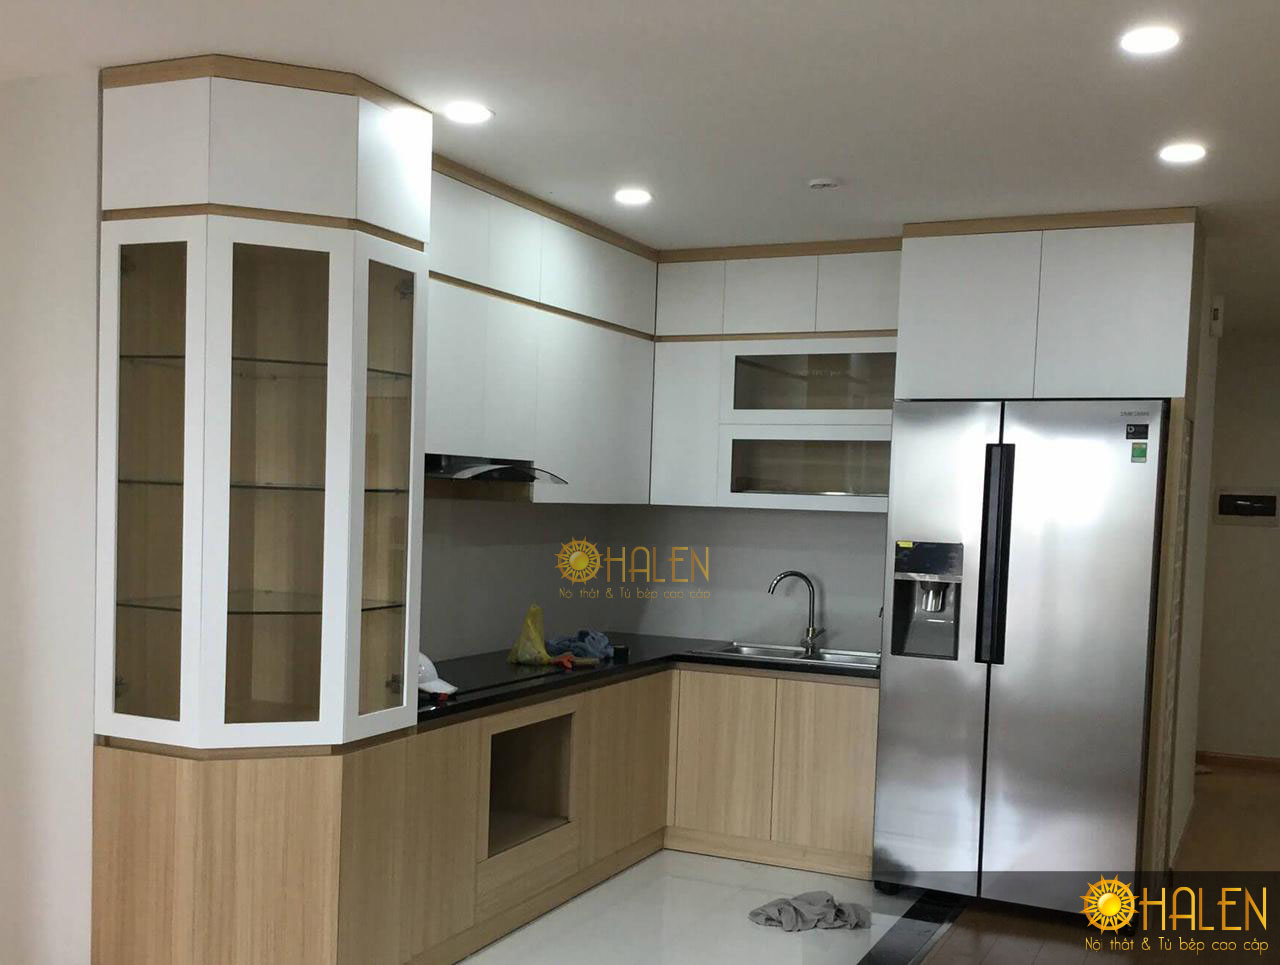 OHALEN chuyên thiết kết và thi công tủ bếp uy tín , chất lượng tại Hà Nội